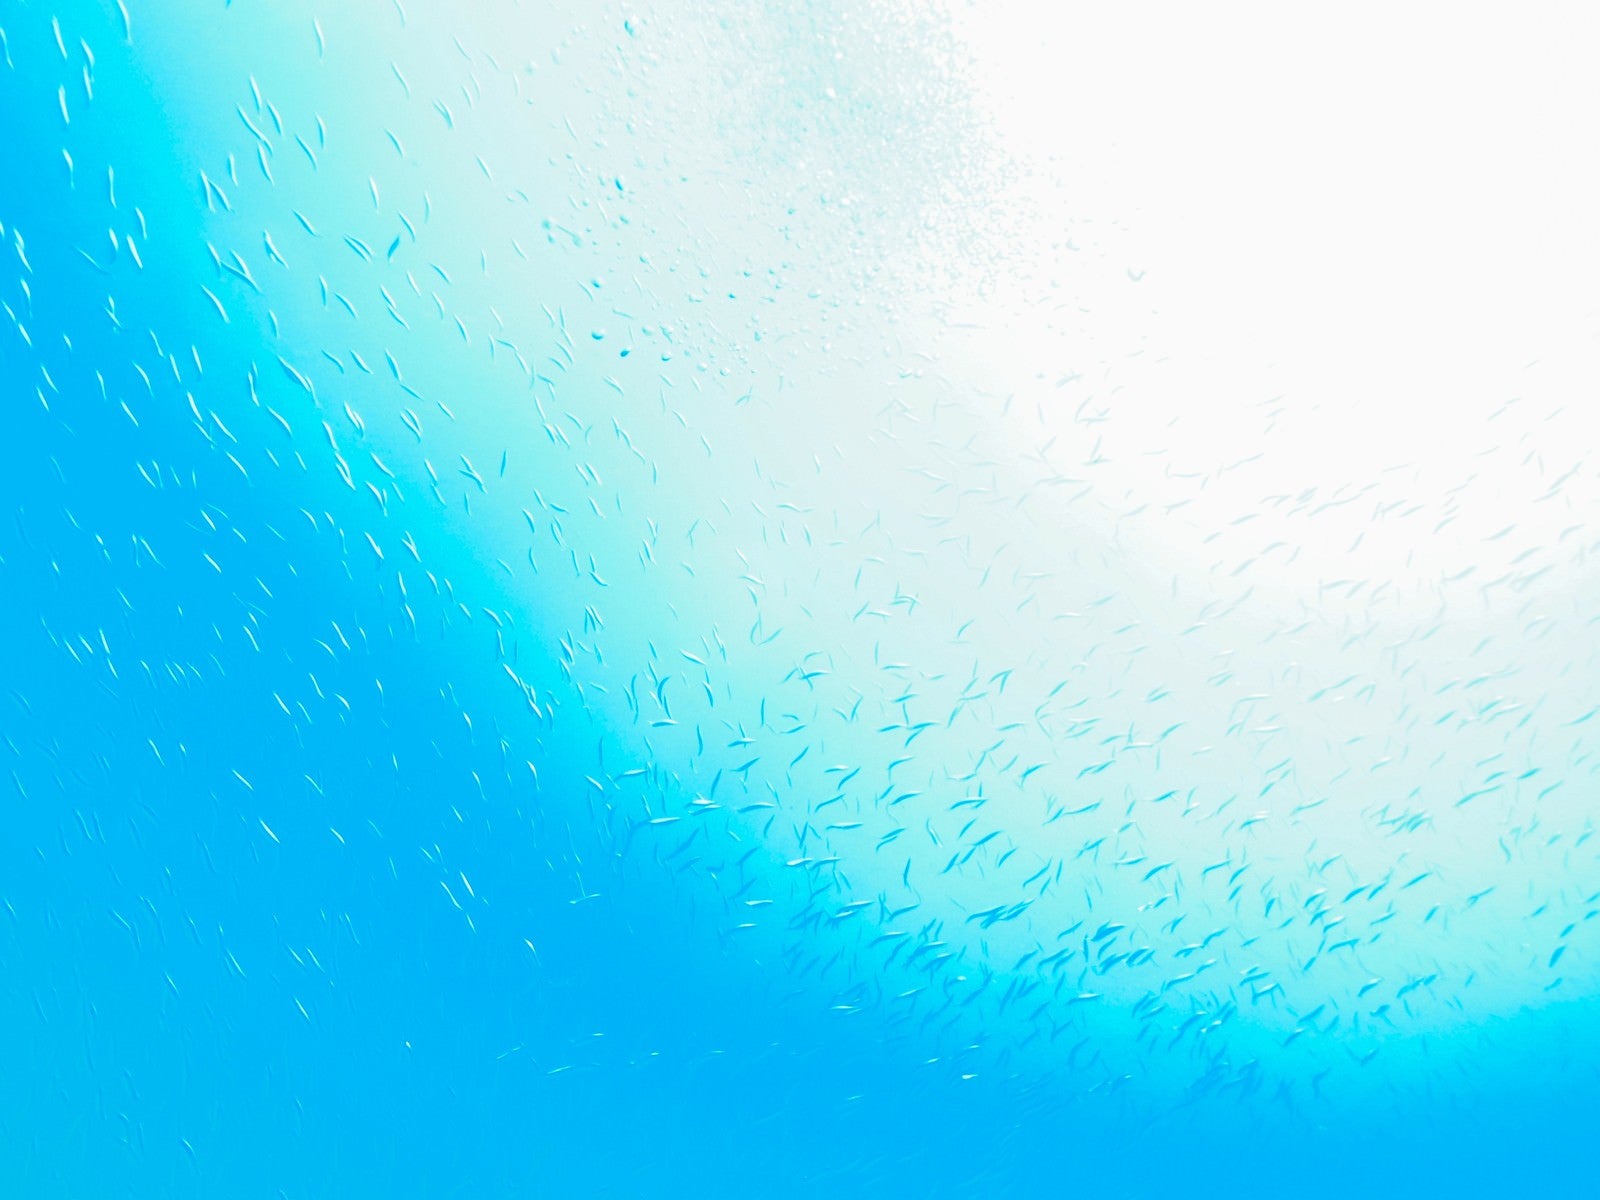 「魚の群れと海と太陽のグラデーション」の写真